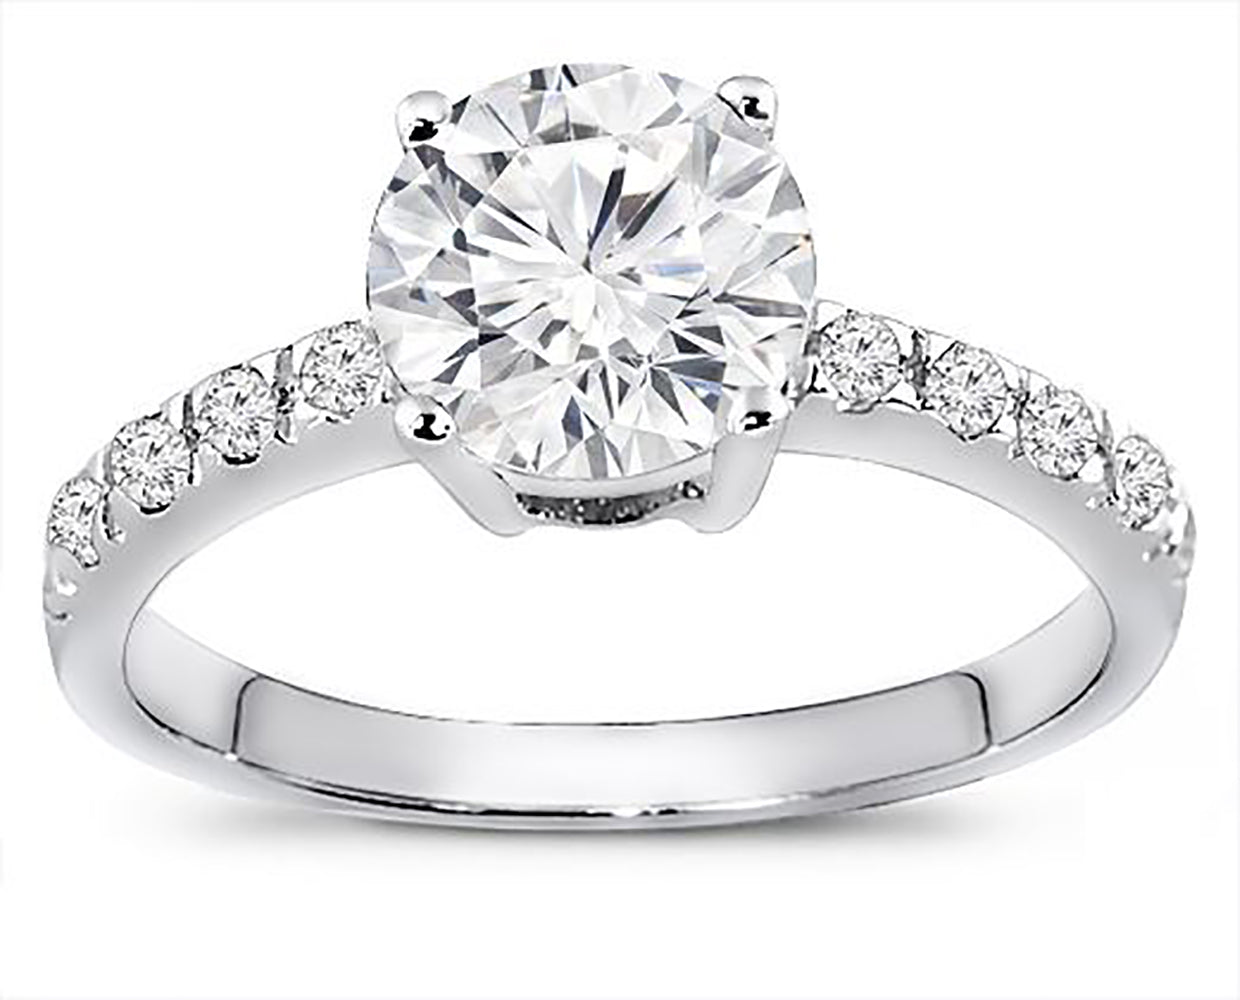 Brilliant Round 0.75 Carat Diamond Engagement Ring